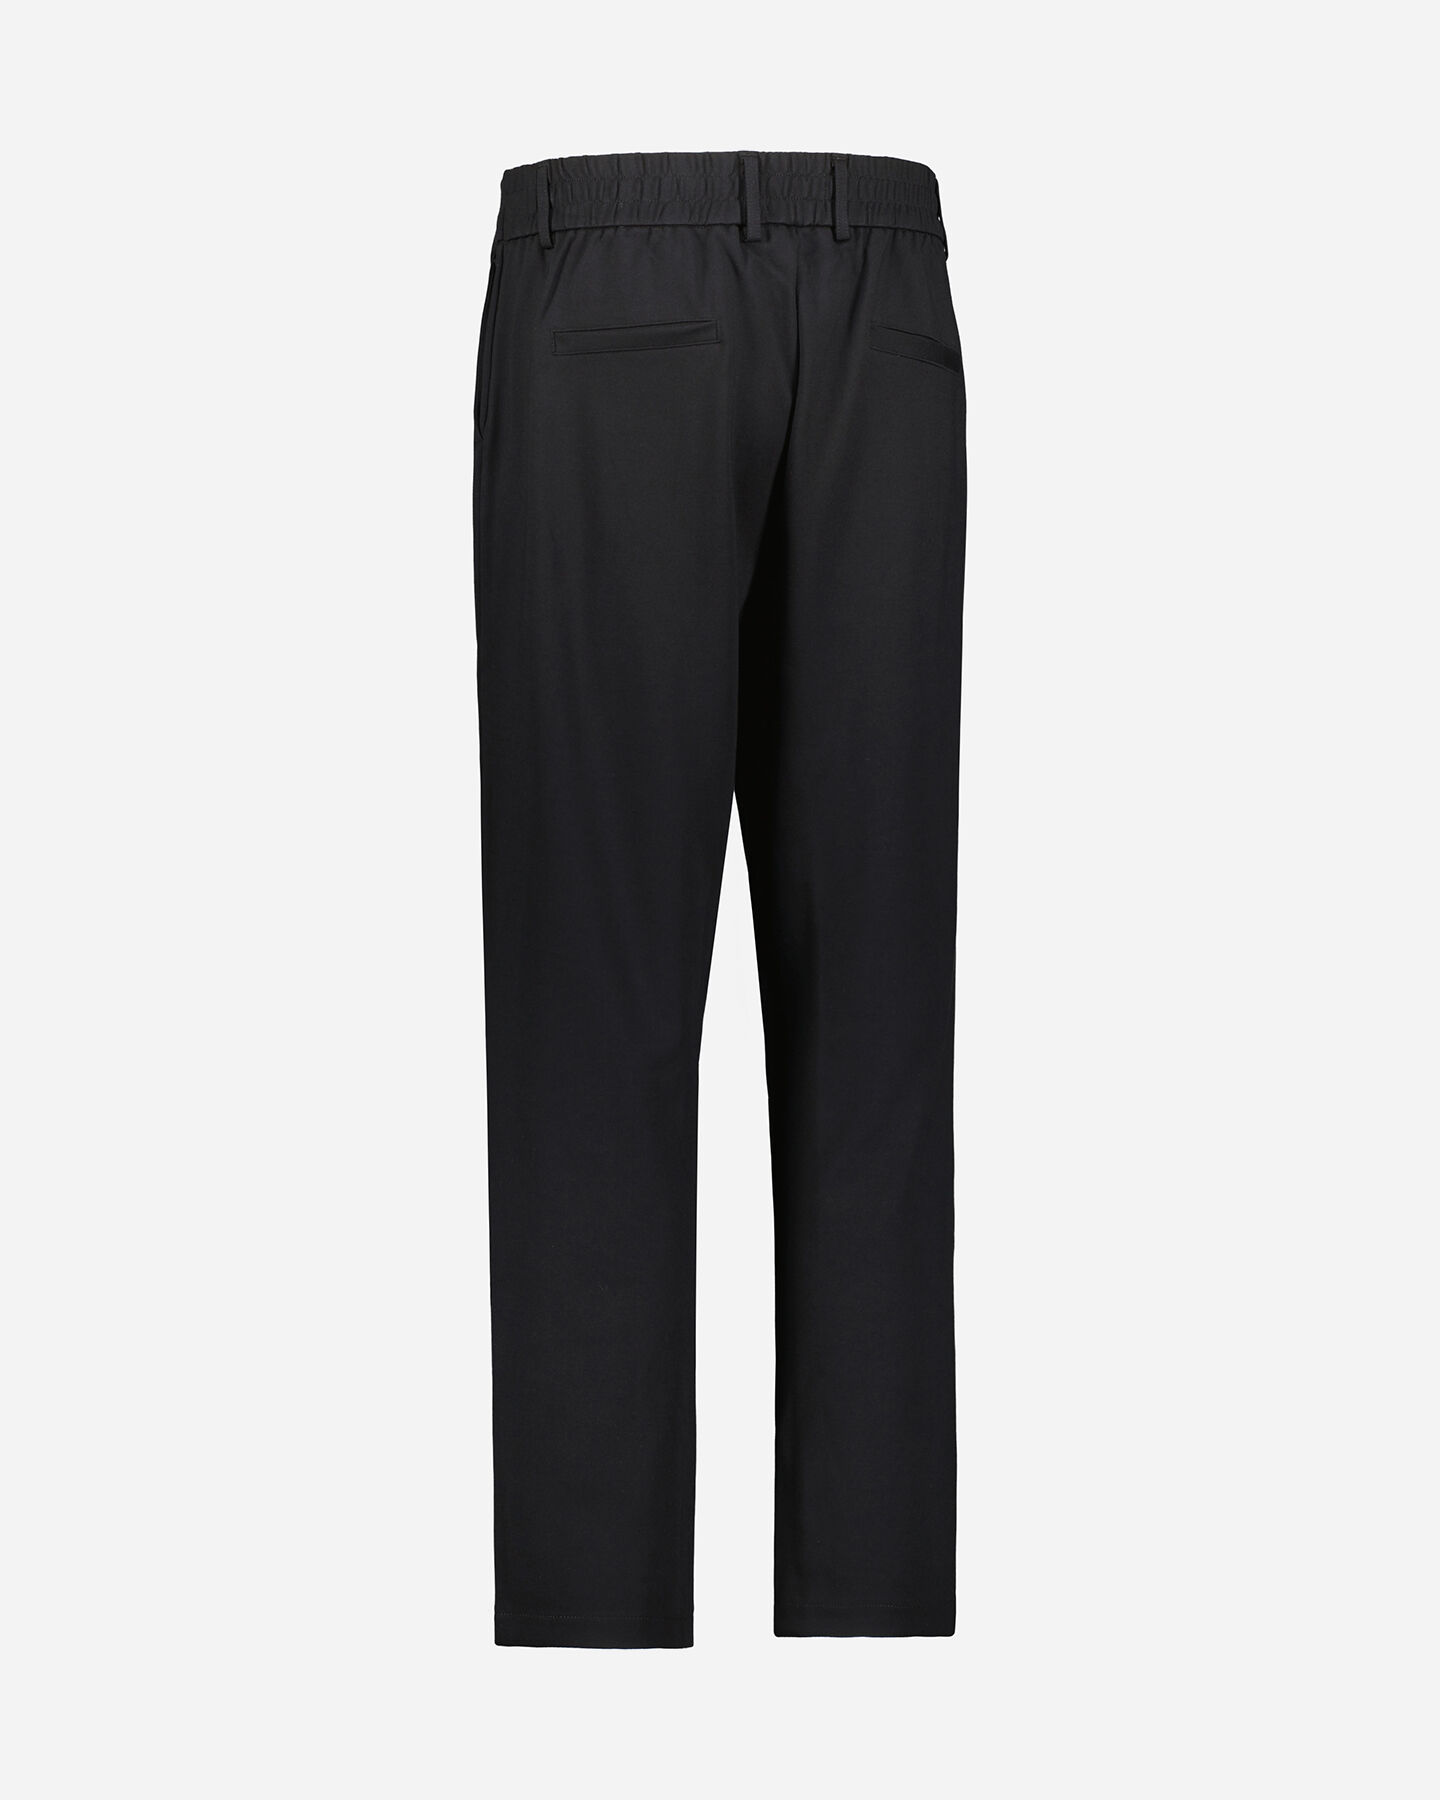  Pantalone DACK'S ESSENTIAL W S4124822|050|XL scatto 5